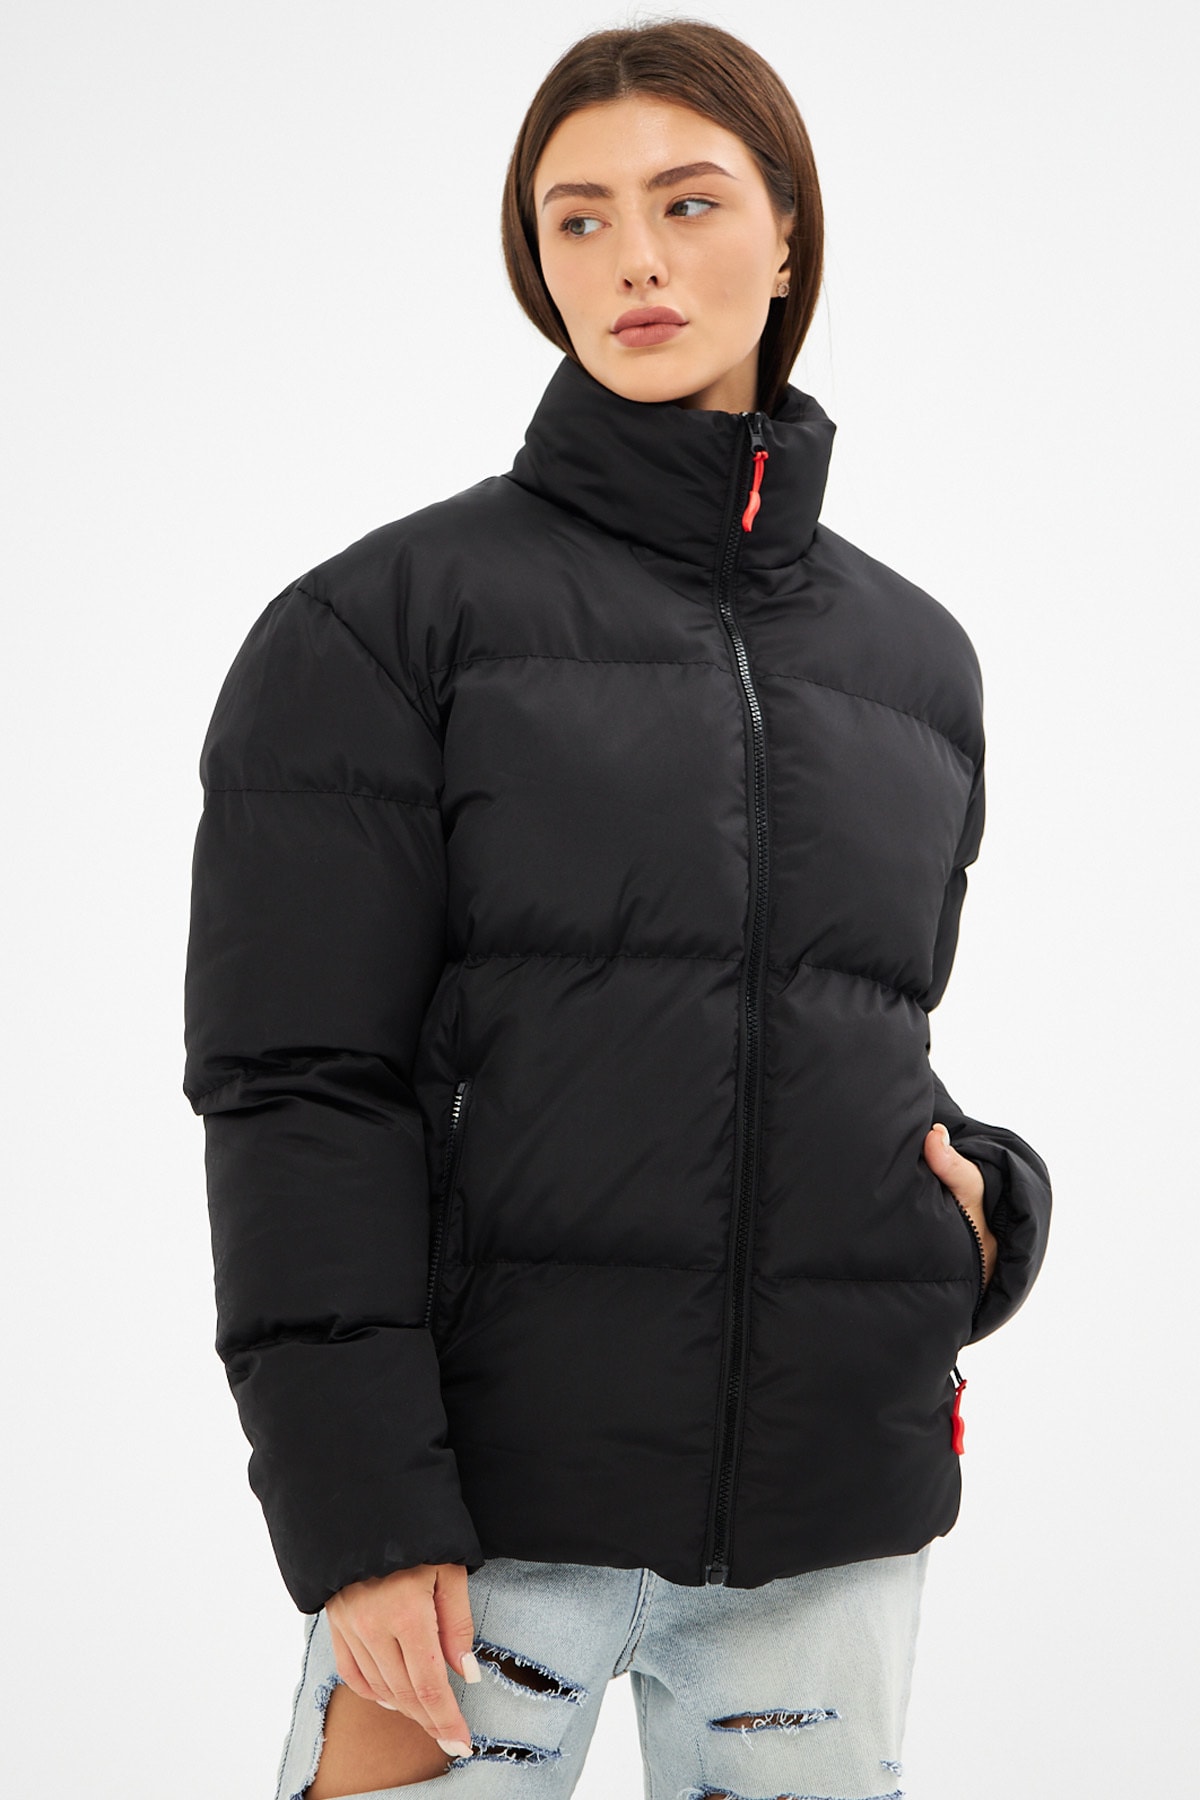 D1fference Dámsky čierny vnútorná podšívka nepremokavý a vetruodolný nafukovací zimný kabát.